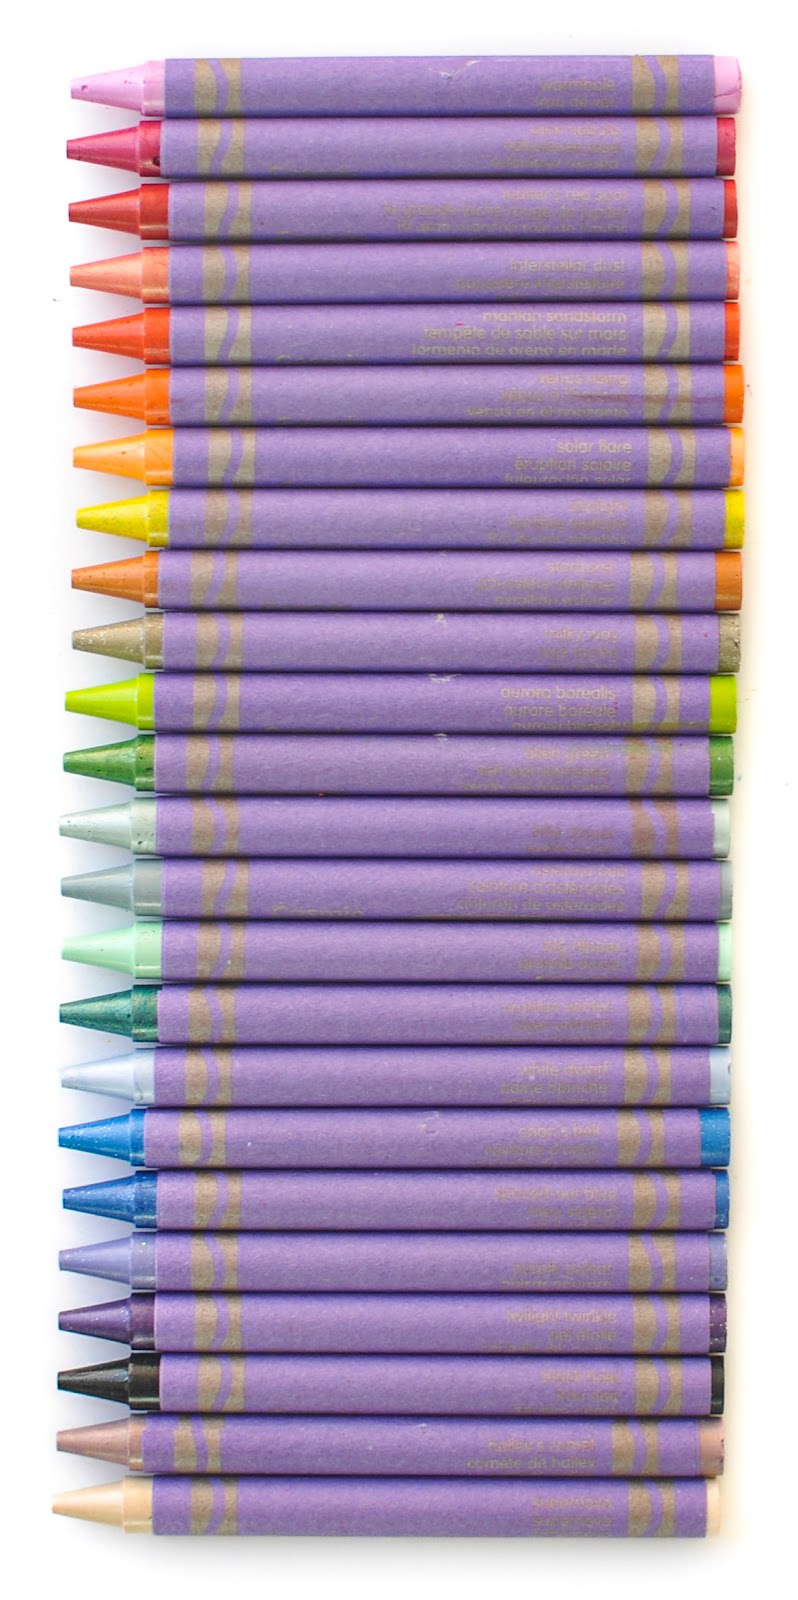 Crayola Pearl Crayons 24 Colors